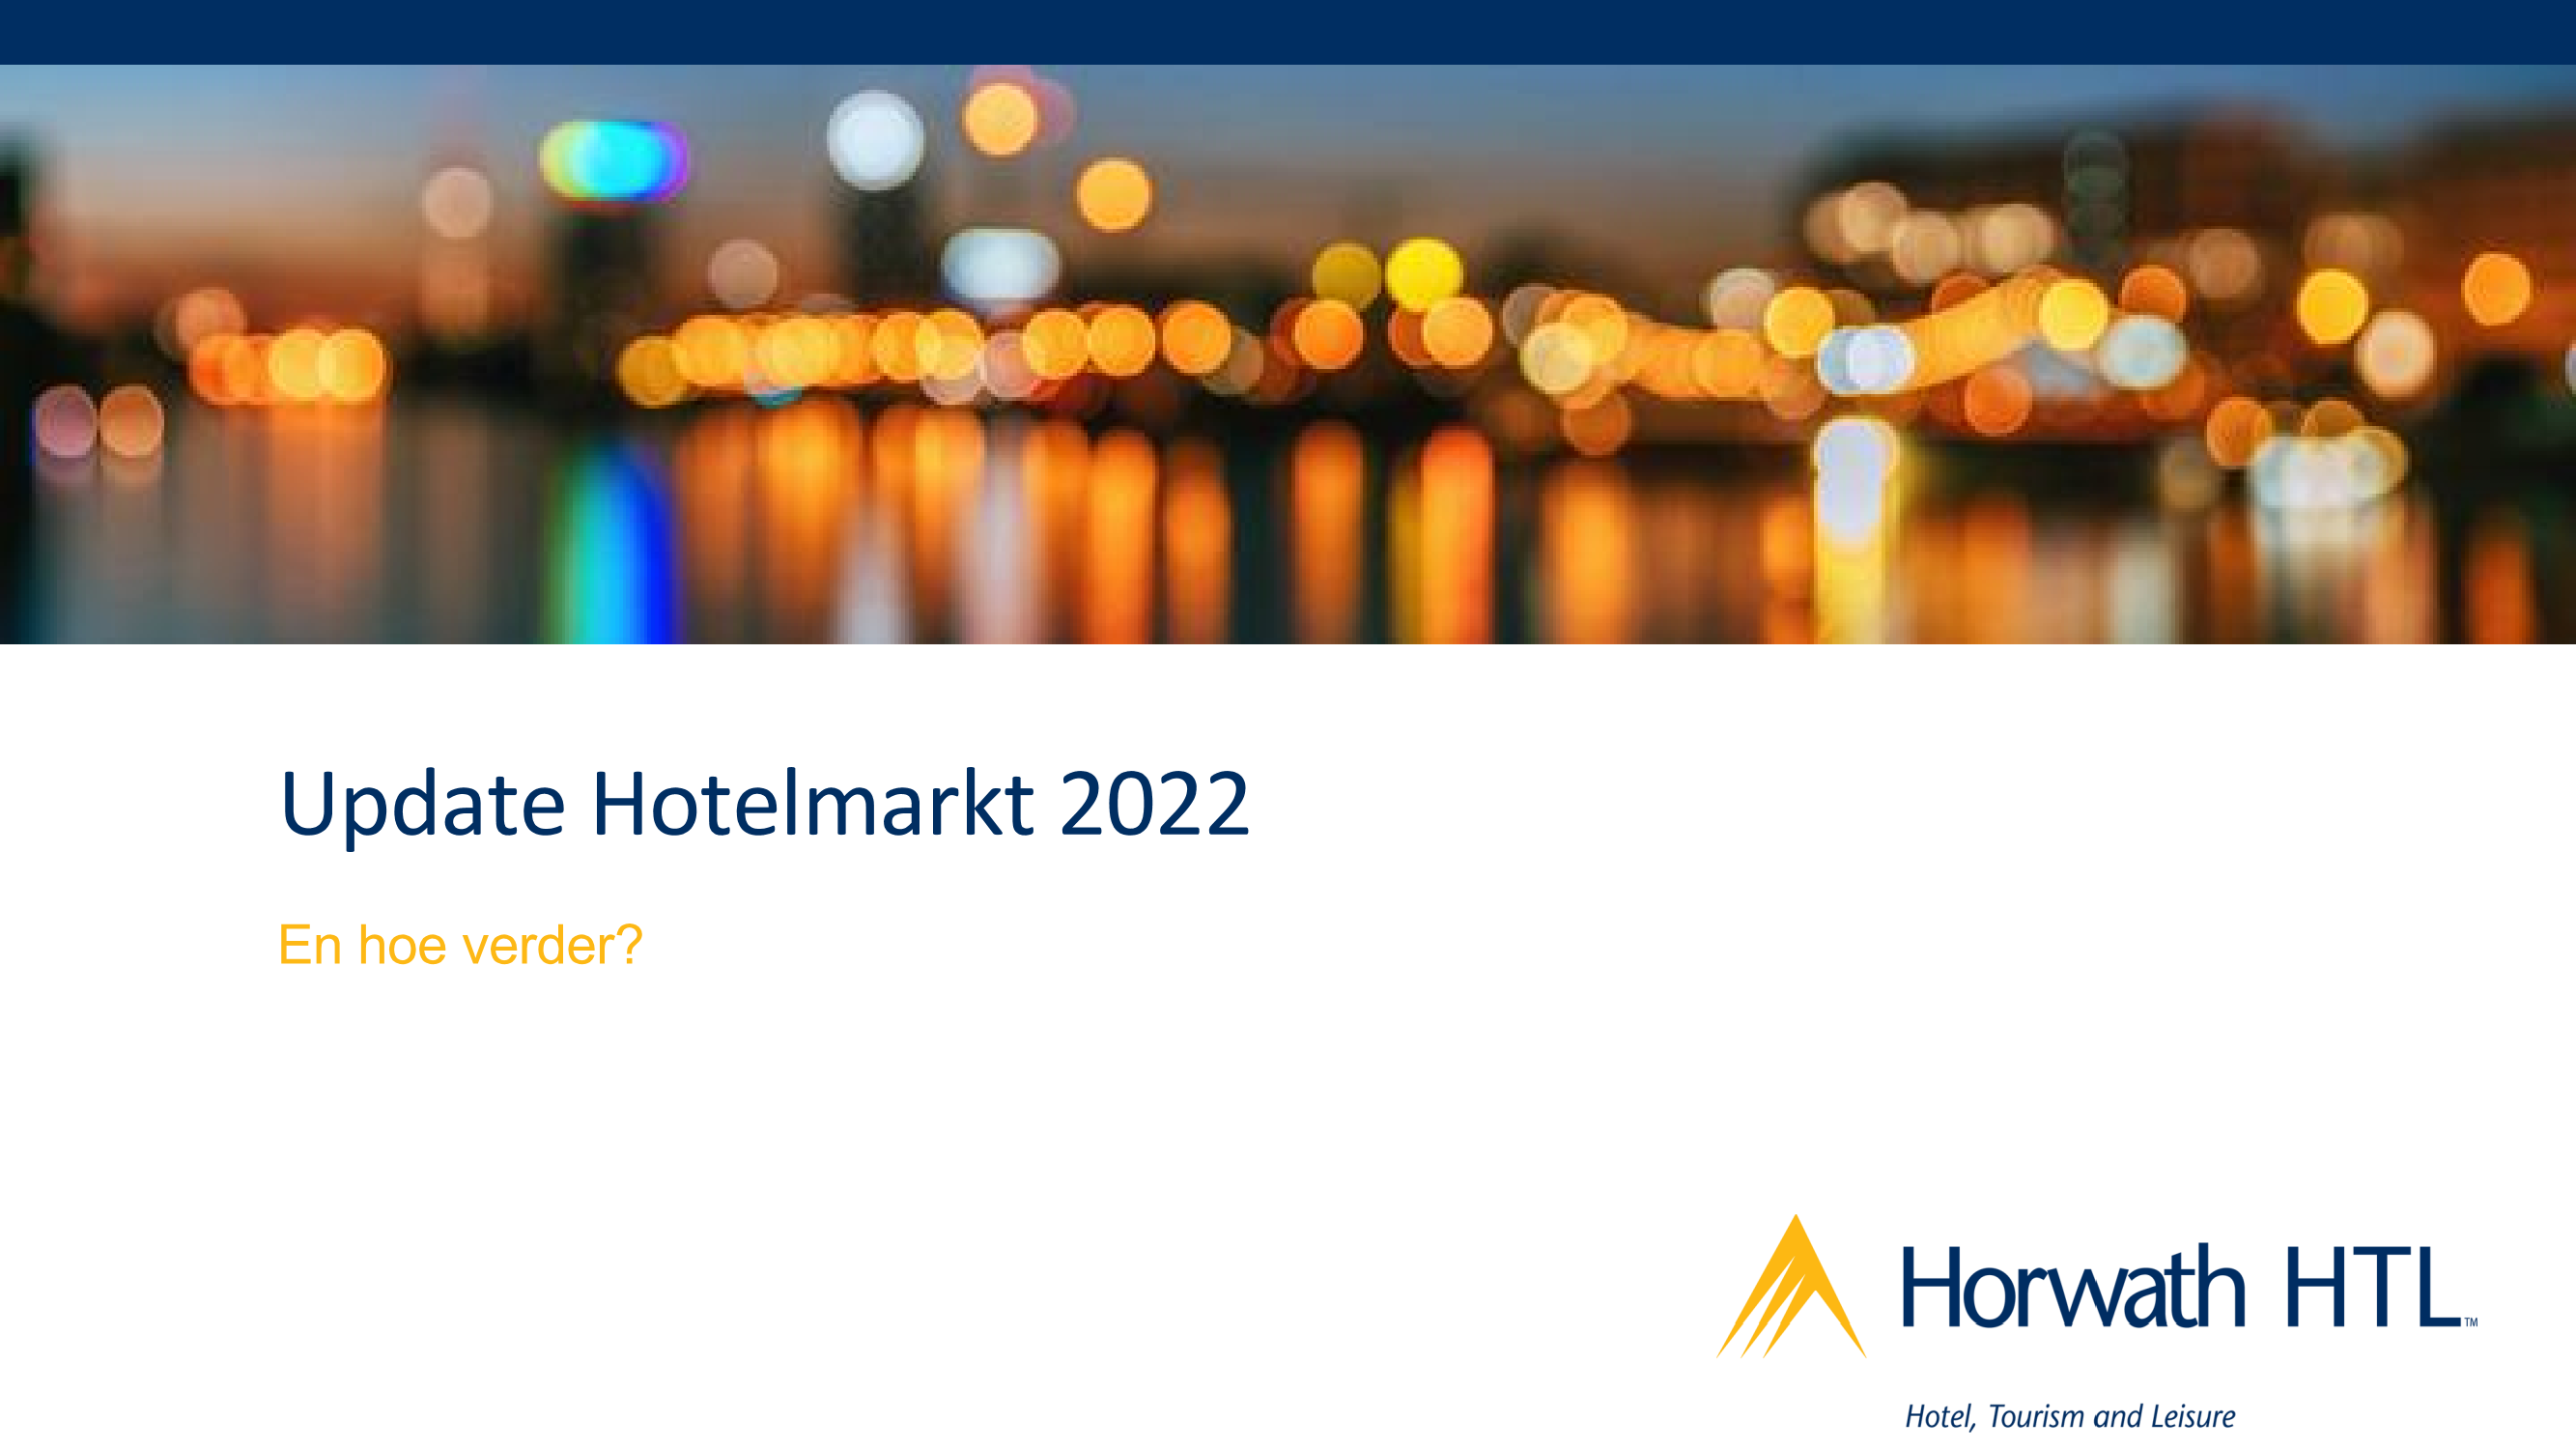 PROVADA: Update Hotelmarkt 2022